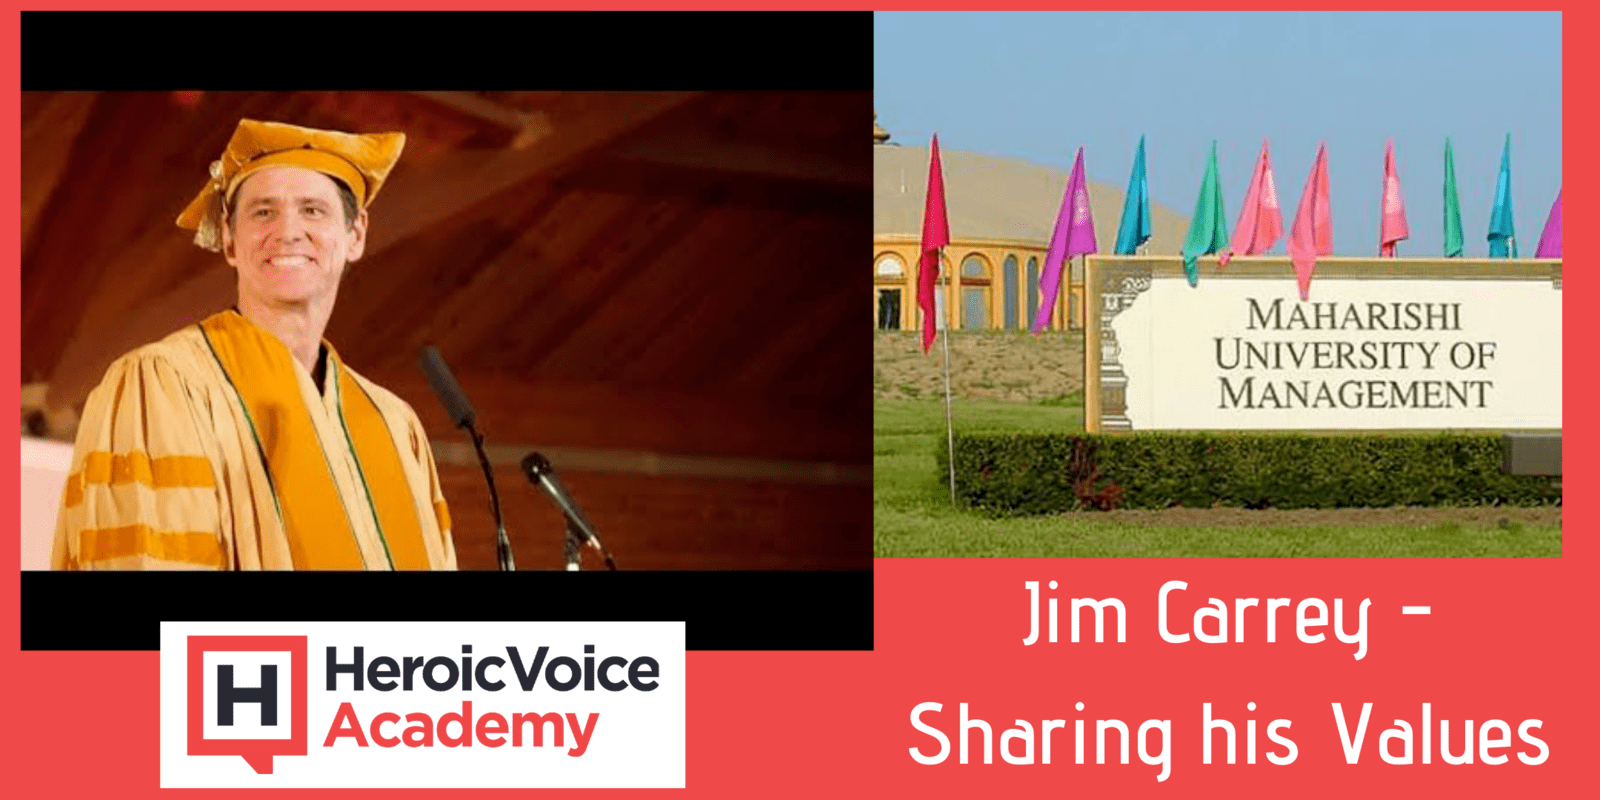 Jim Carrey - Sharing his Values